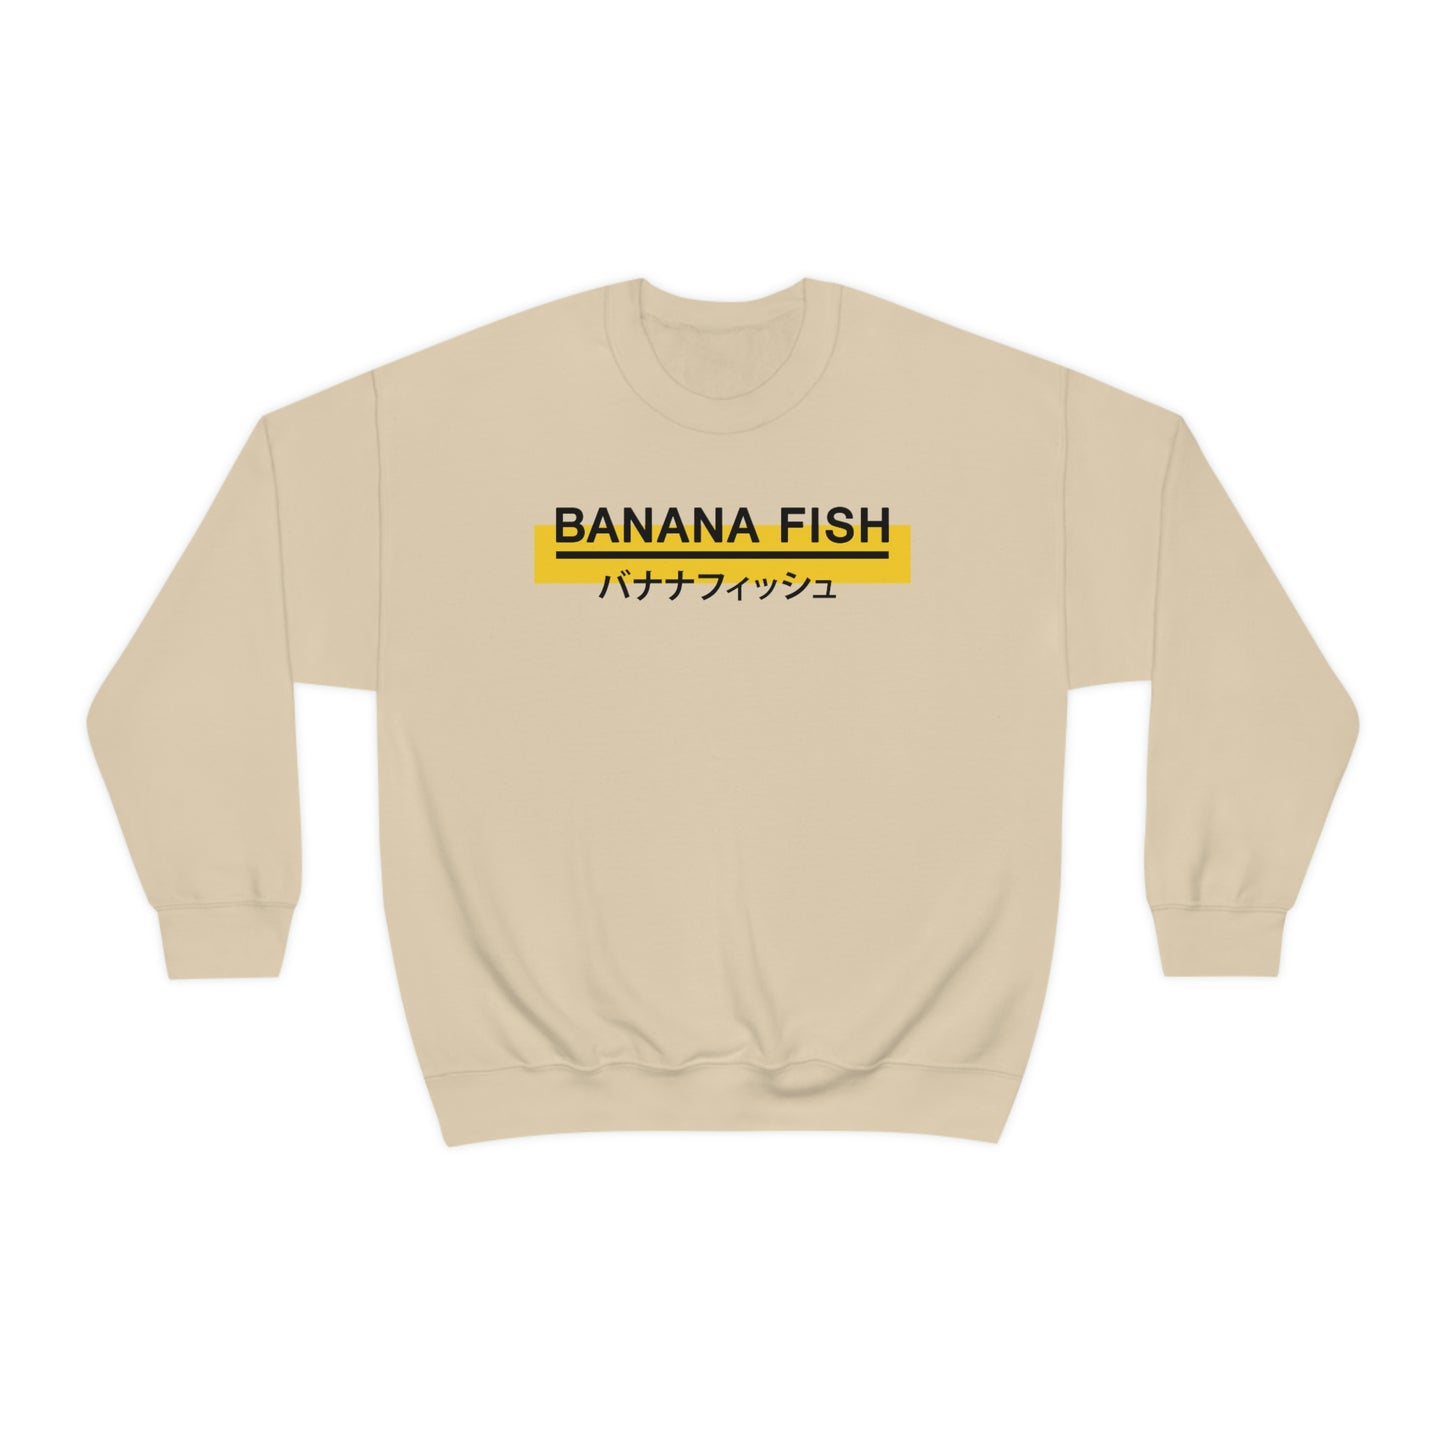 Banana Sweatshirt Fishes Harajuku My Soul Is Always With You